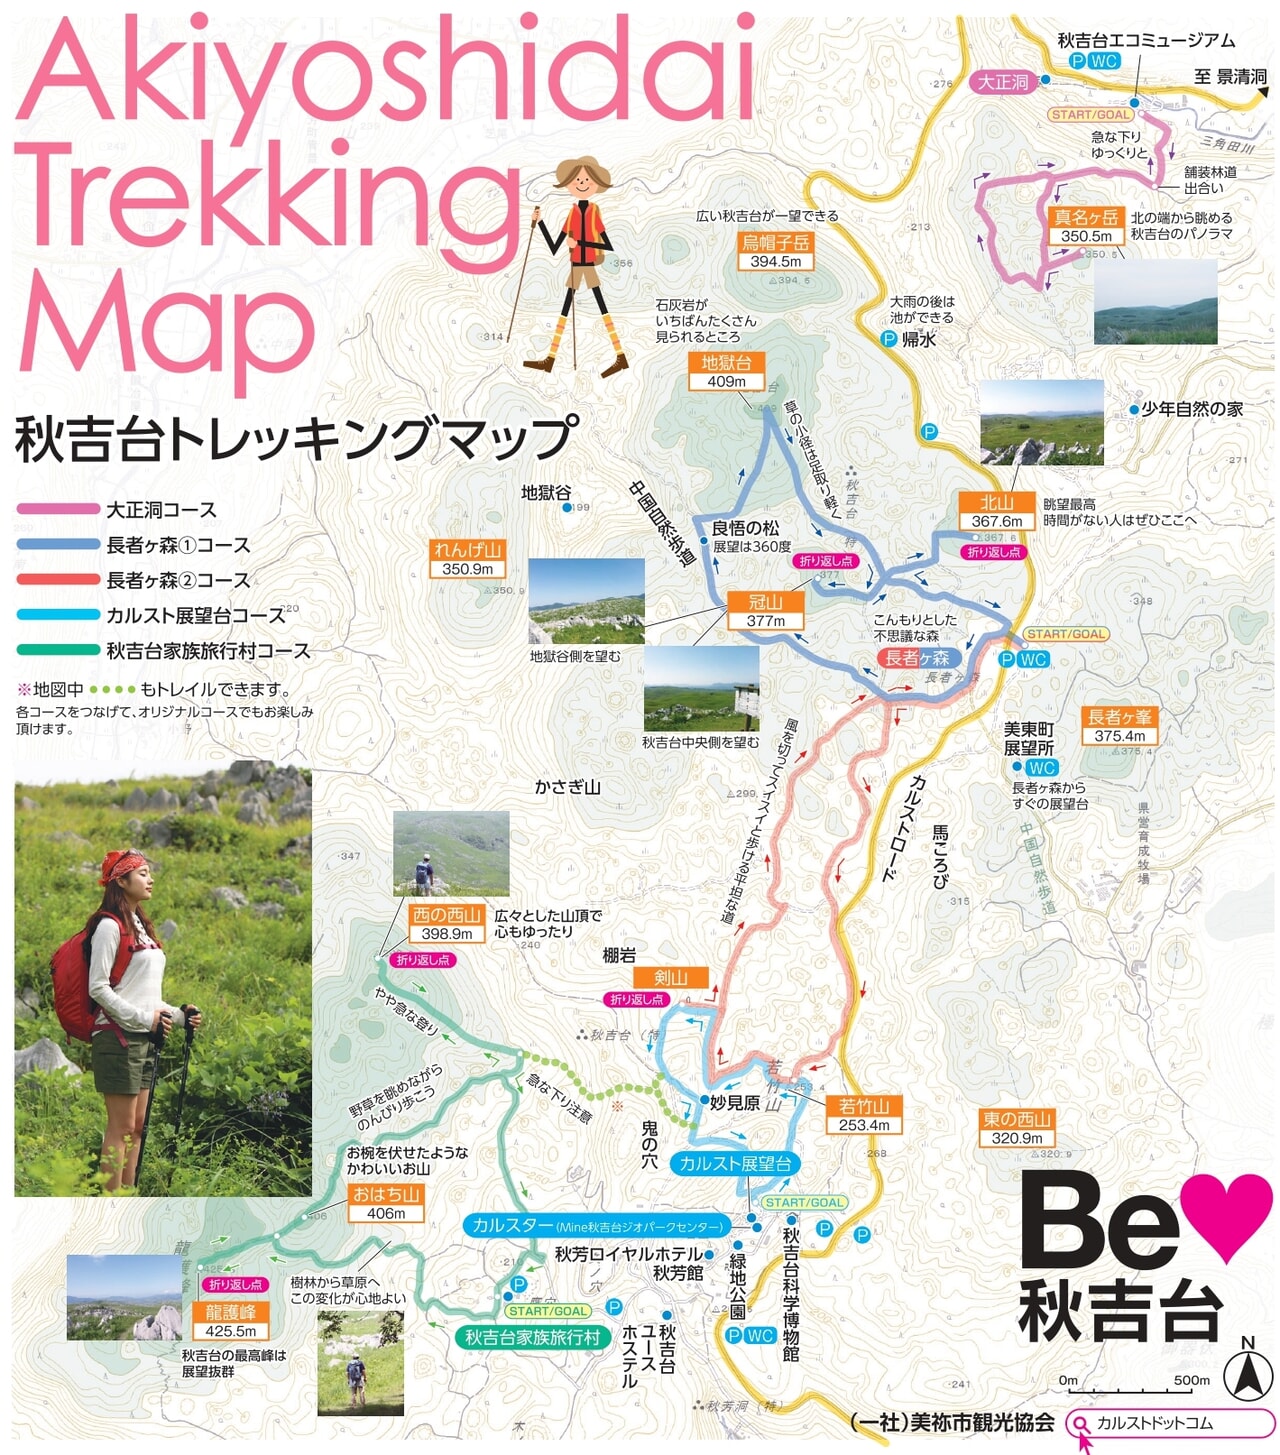 山口県 日本最大のカルスト台地 秋吉台 を歩こう 人気の長者ヶ森コースをトレッキング キャンプクエスト